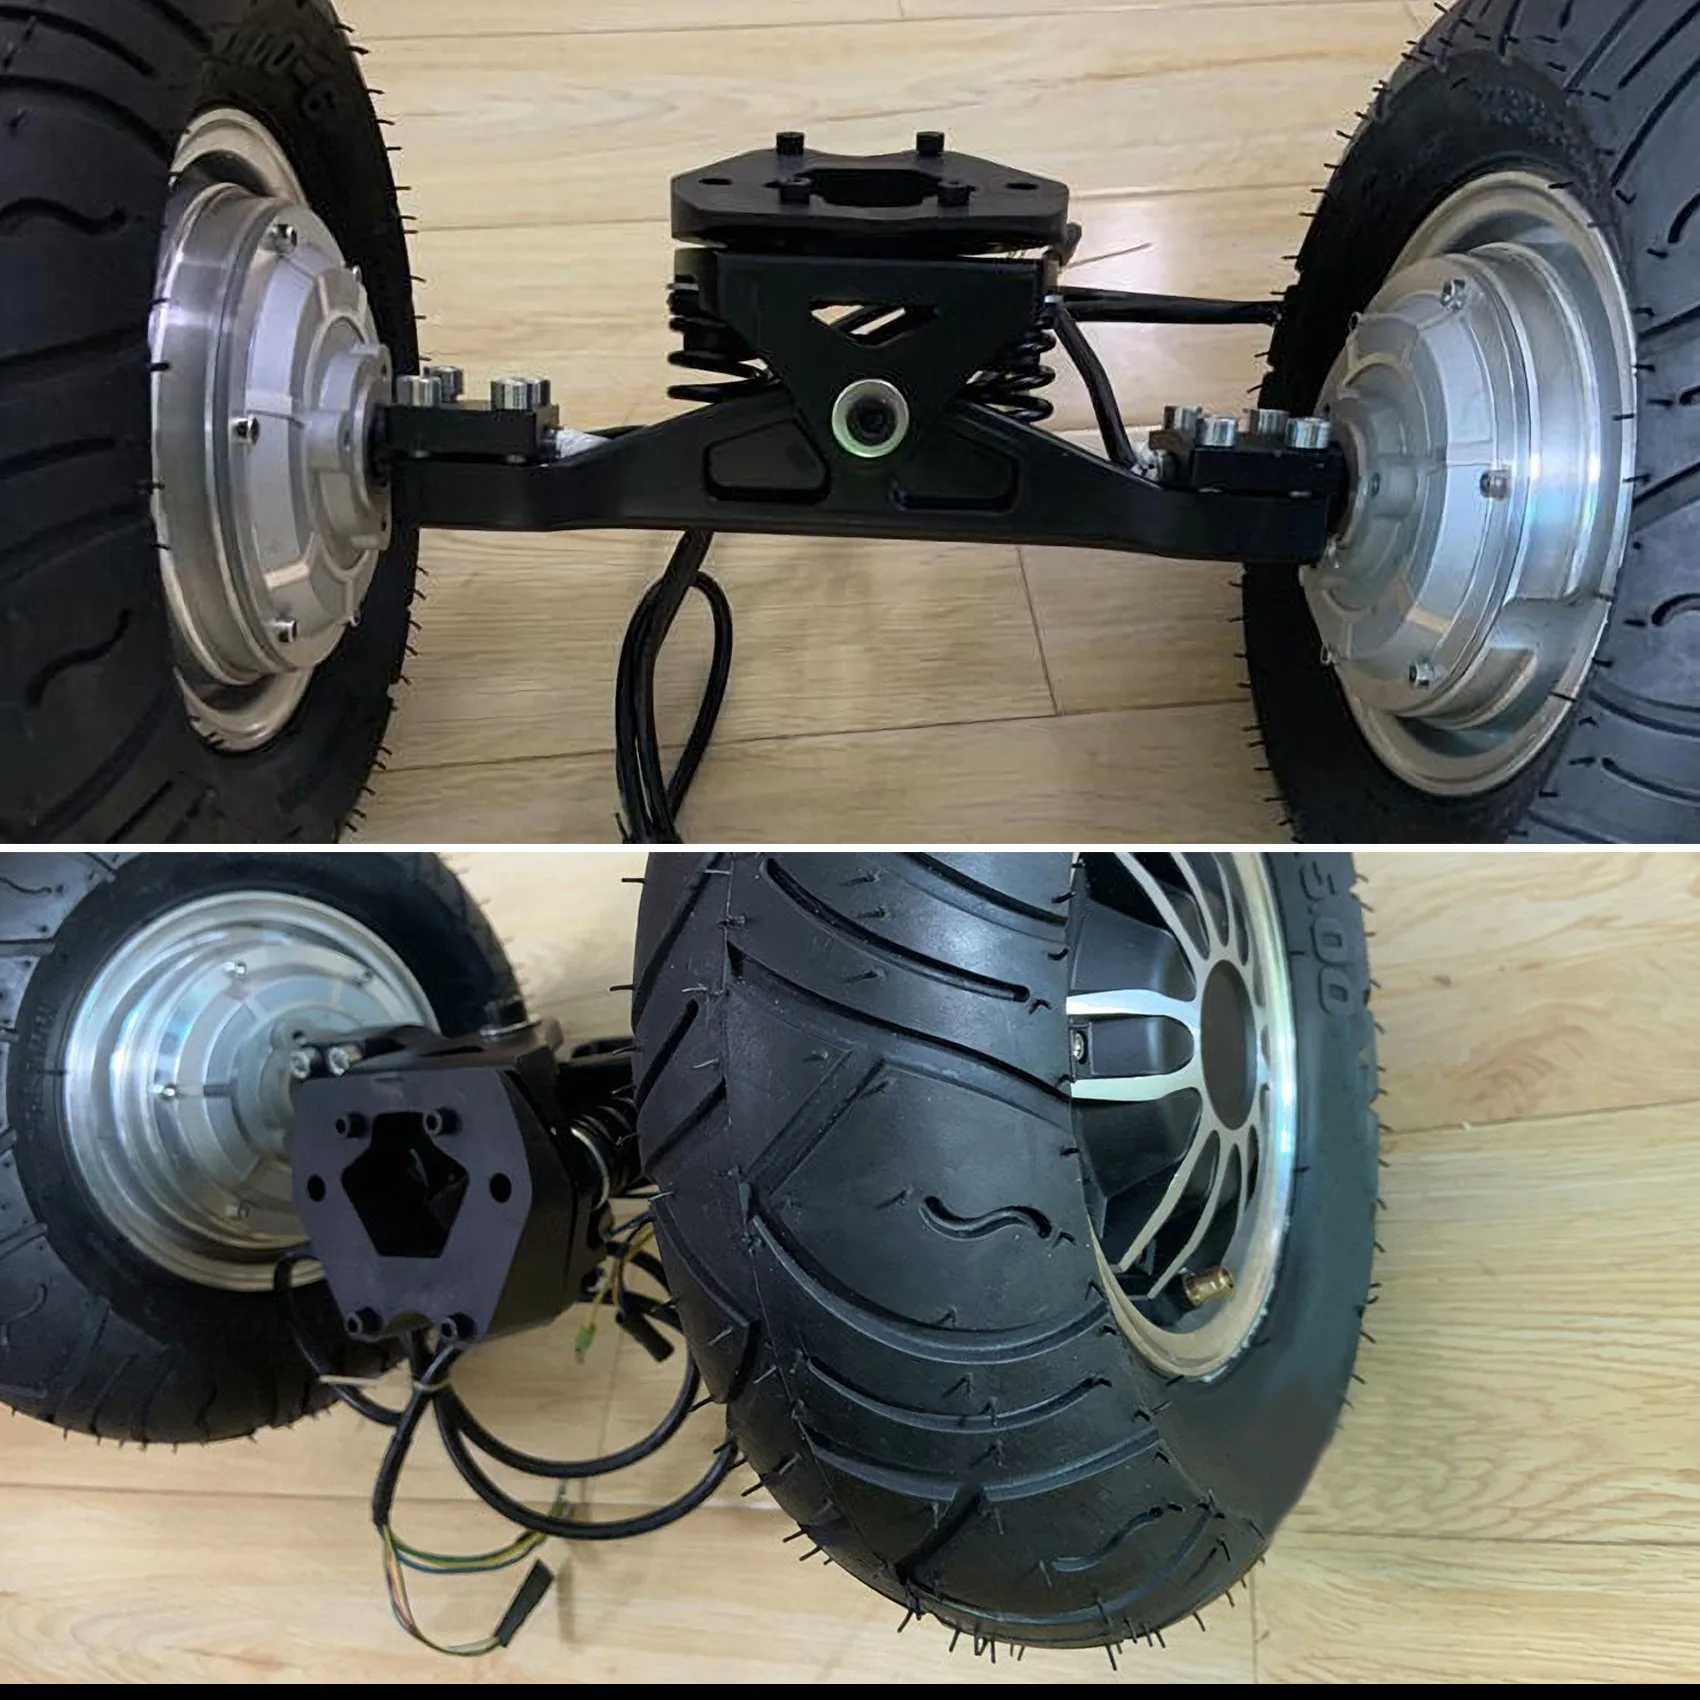 

Грузовик для скейтборда с мотором с одним валом, колесо для горного скейтборда, грузовик с пружиной, совместимый со стандартным колесом